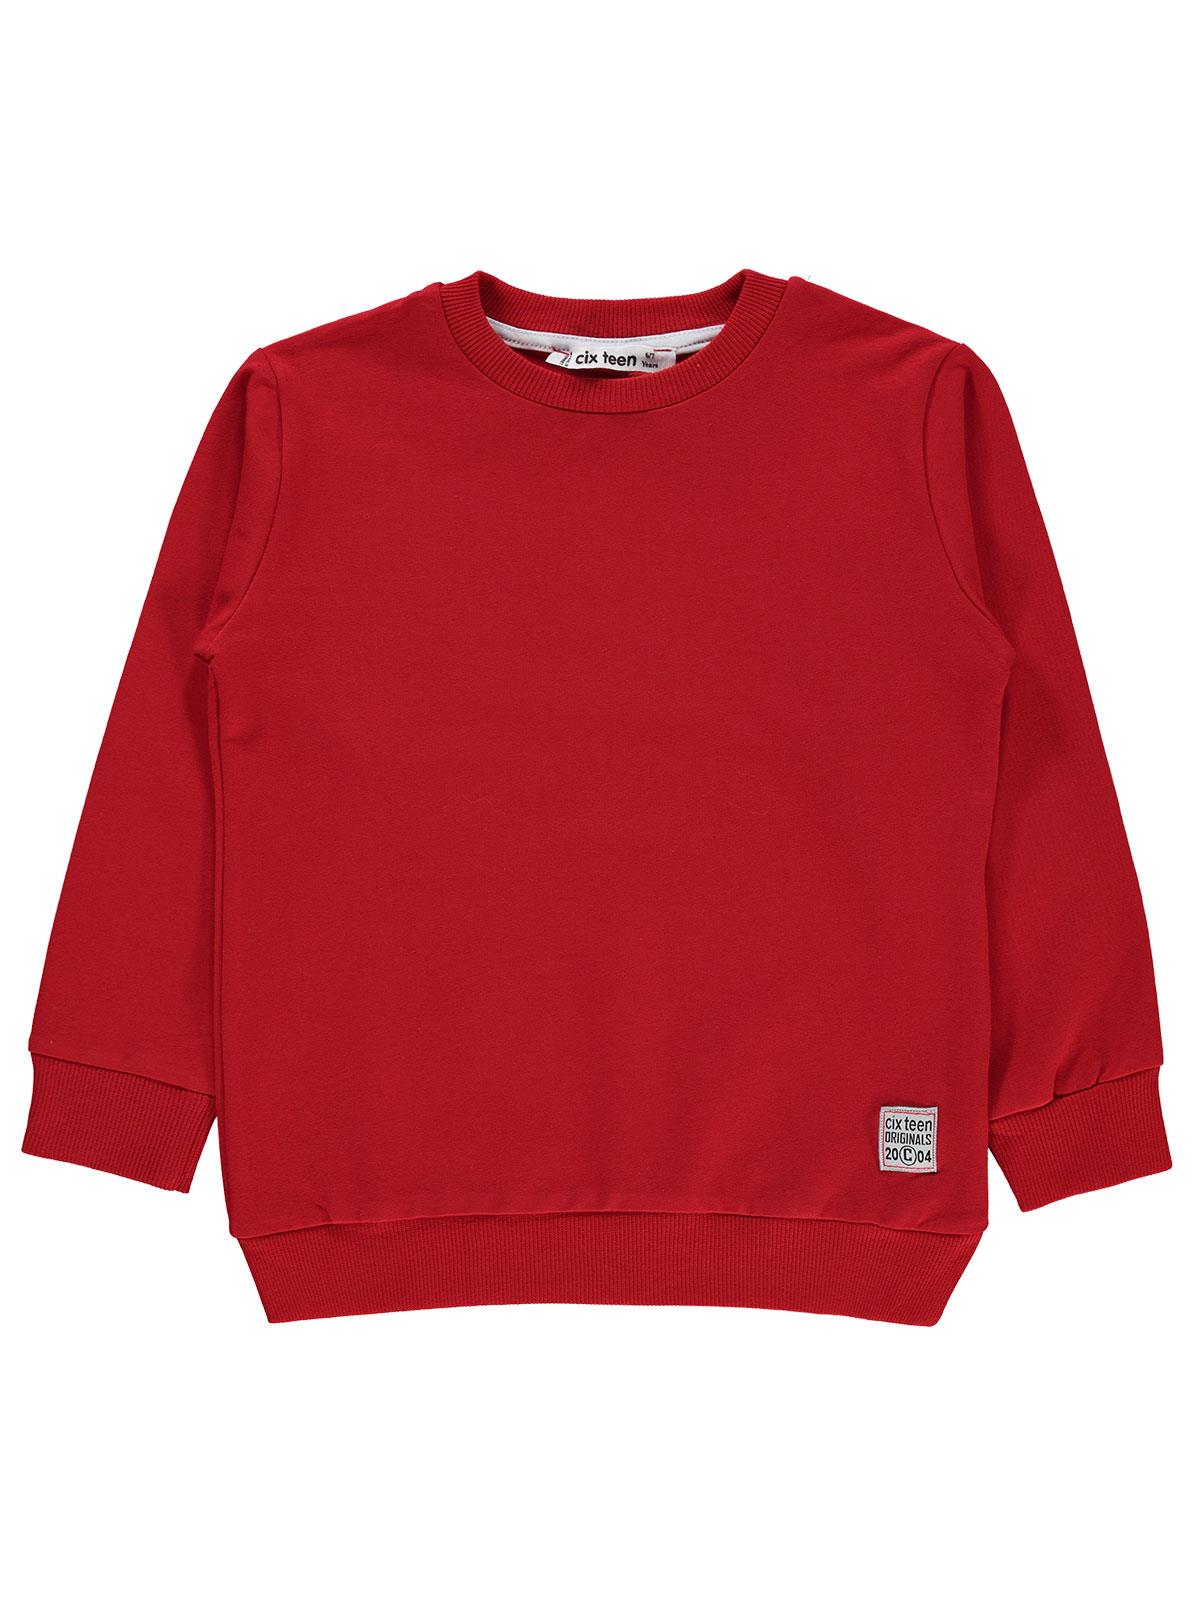 Cix Teen Erkek Çocuk Sweatshirt 6-9 Yaş Kırmızı